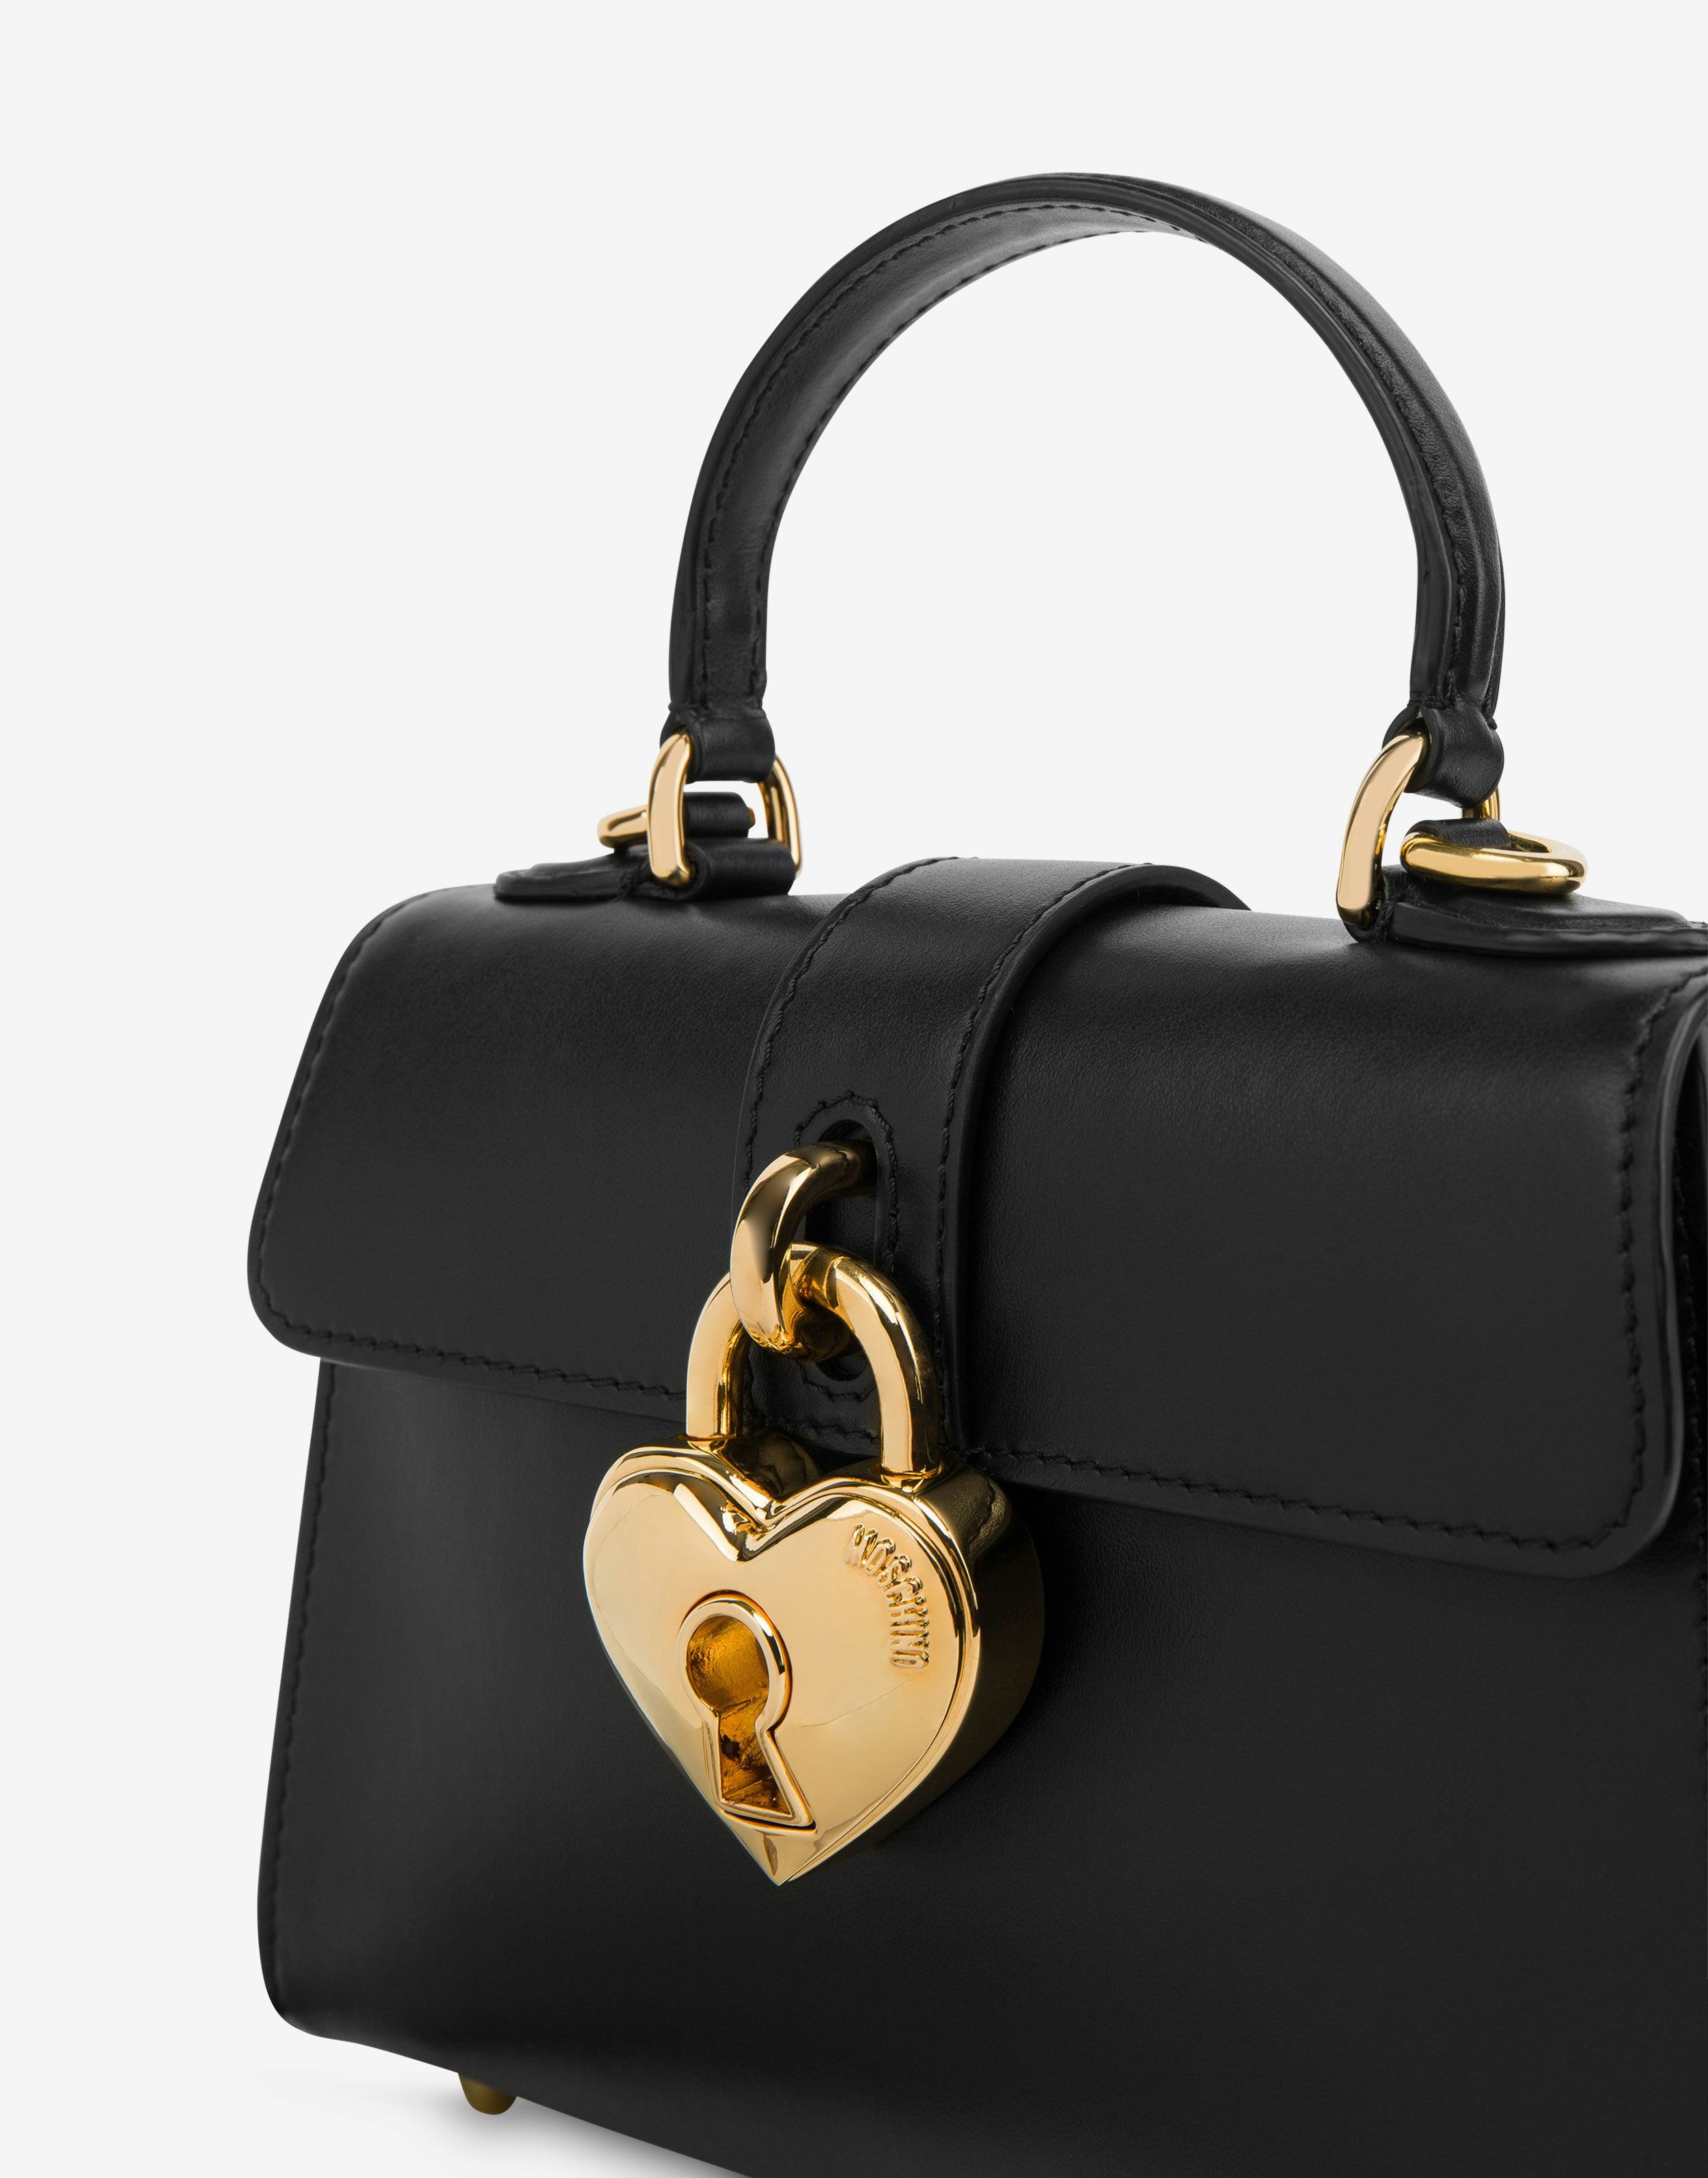 Heart Lock calfskin handbag 2